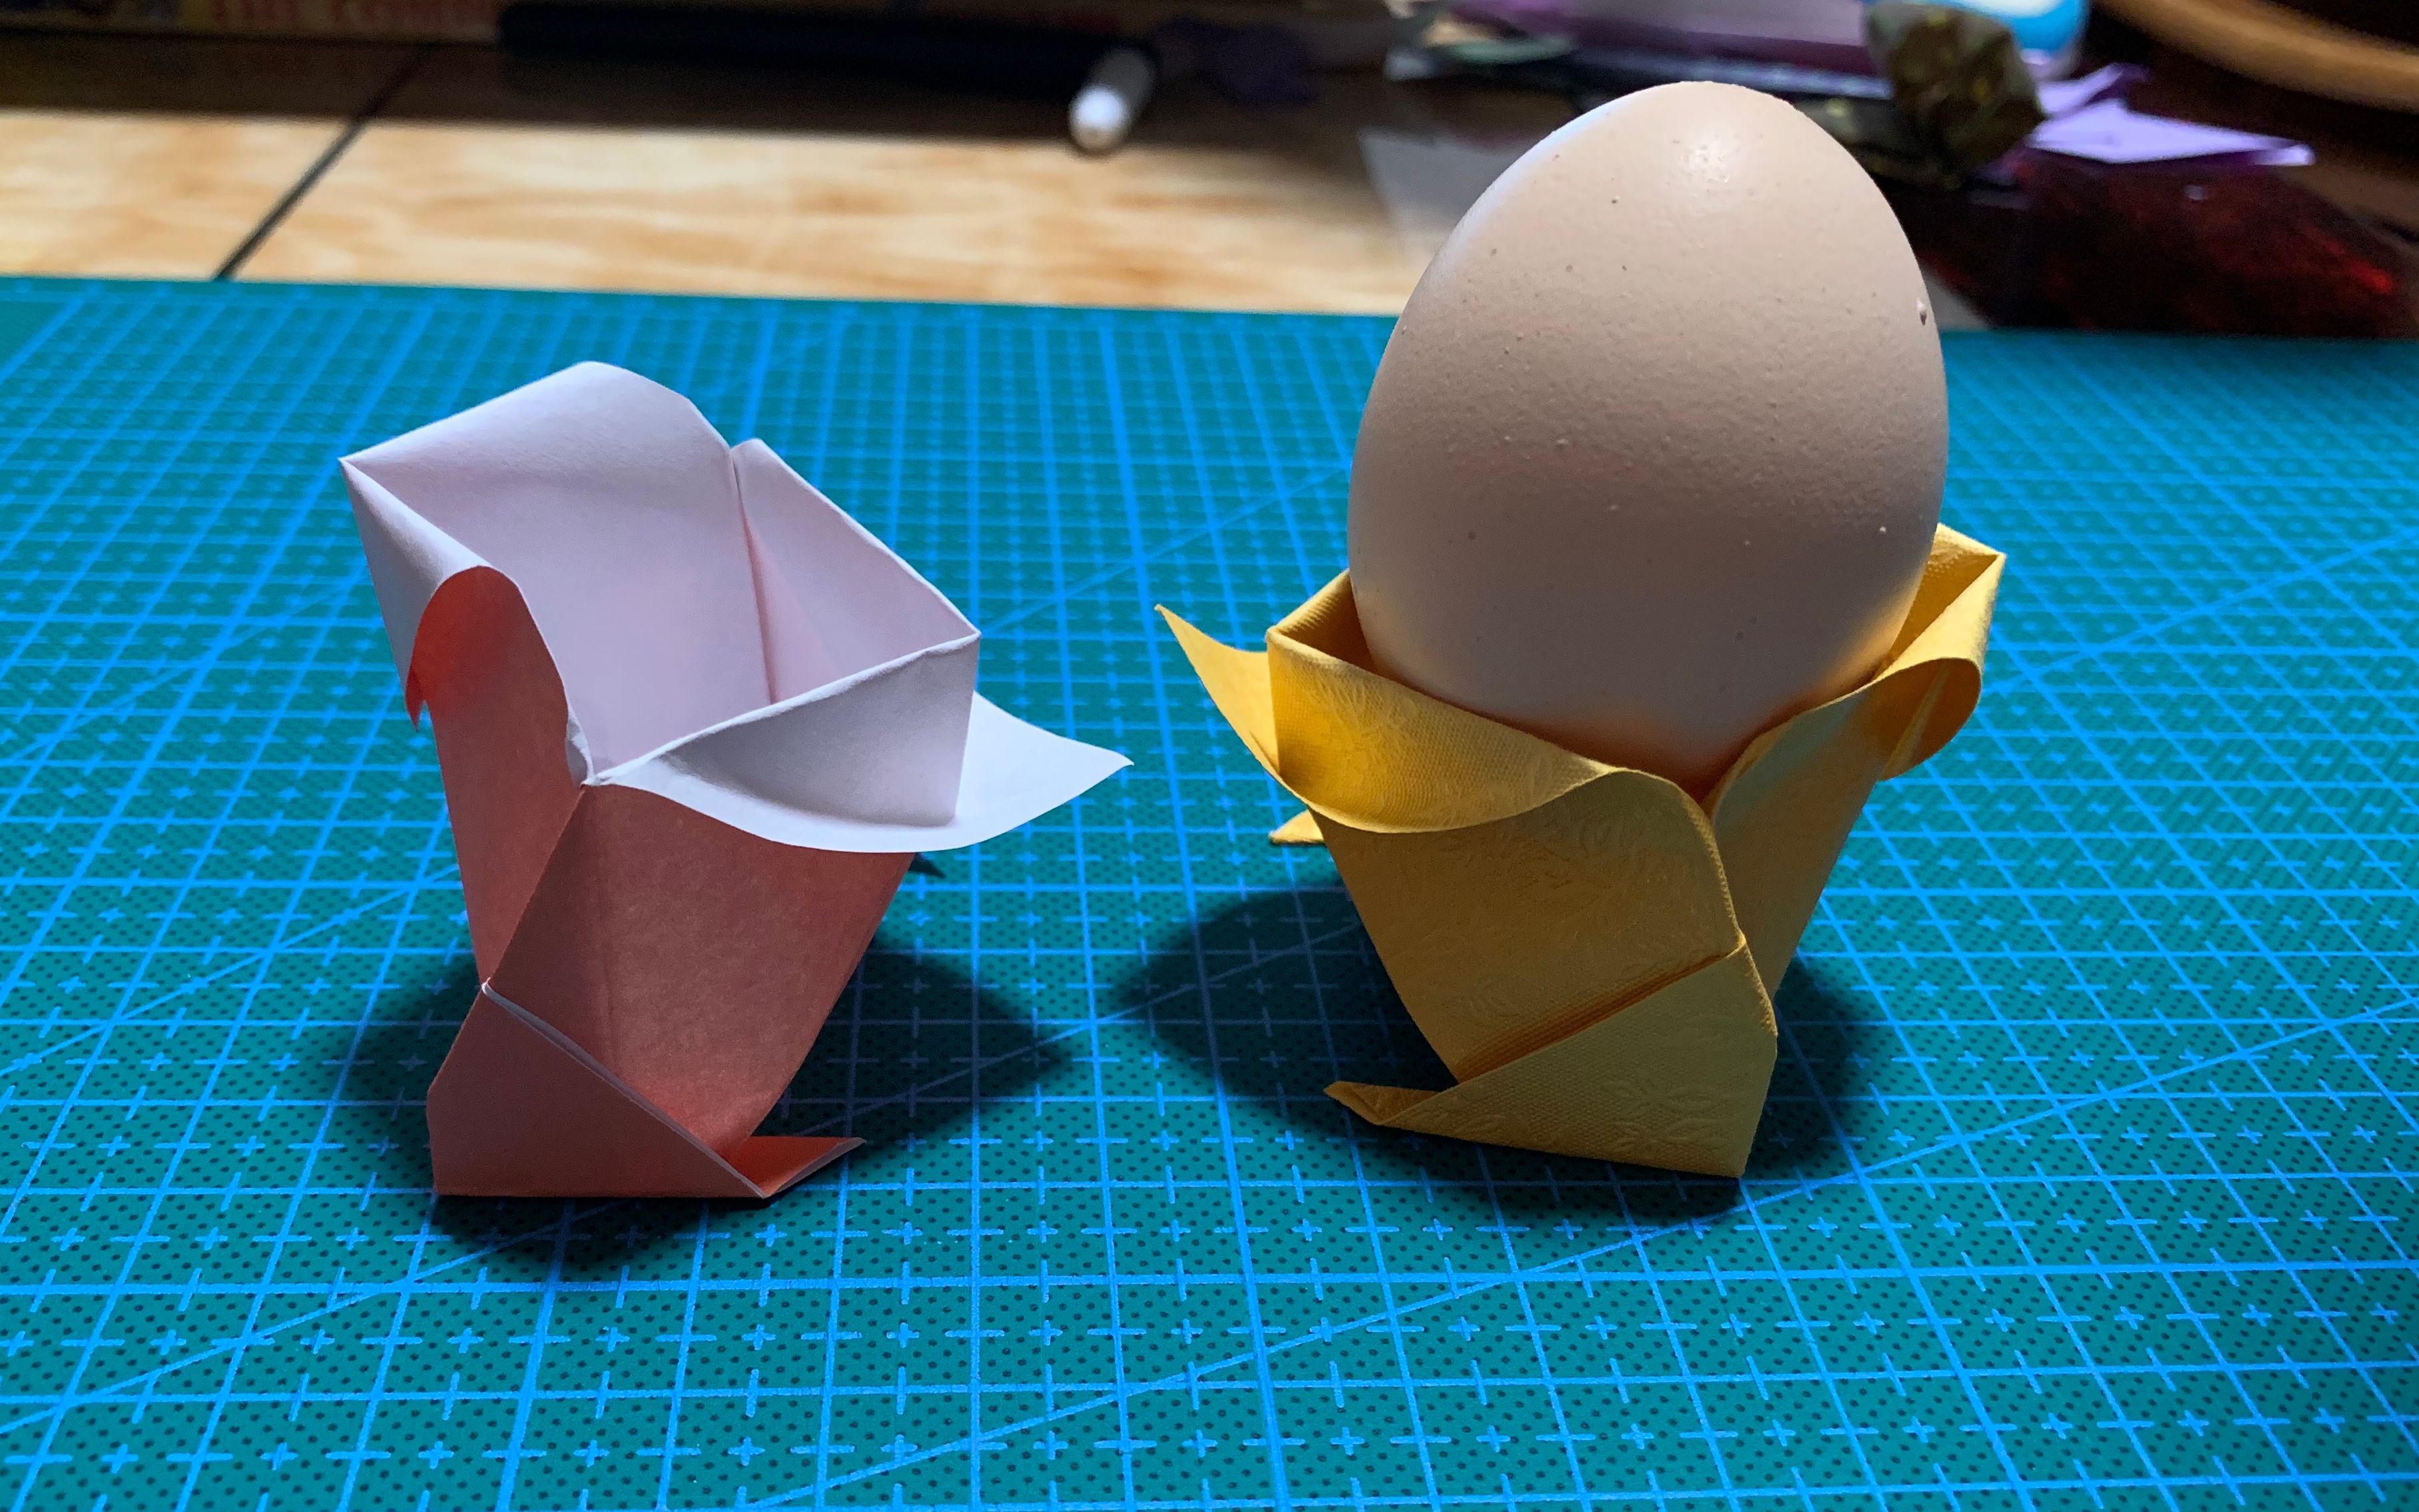 【折纸教程】鸡蛋,鸡蛋,圆滚滚,有了它